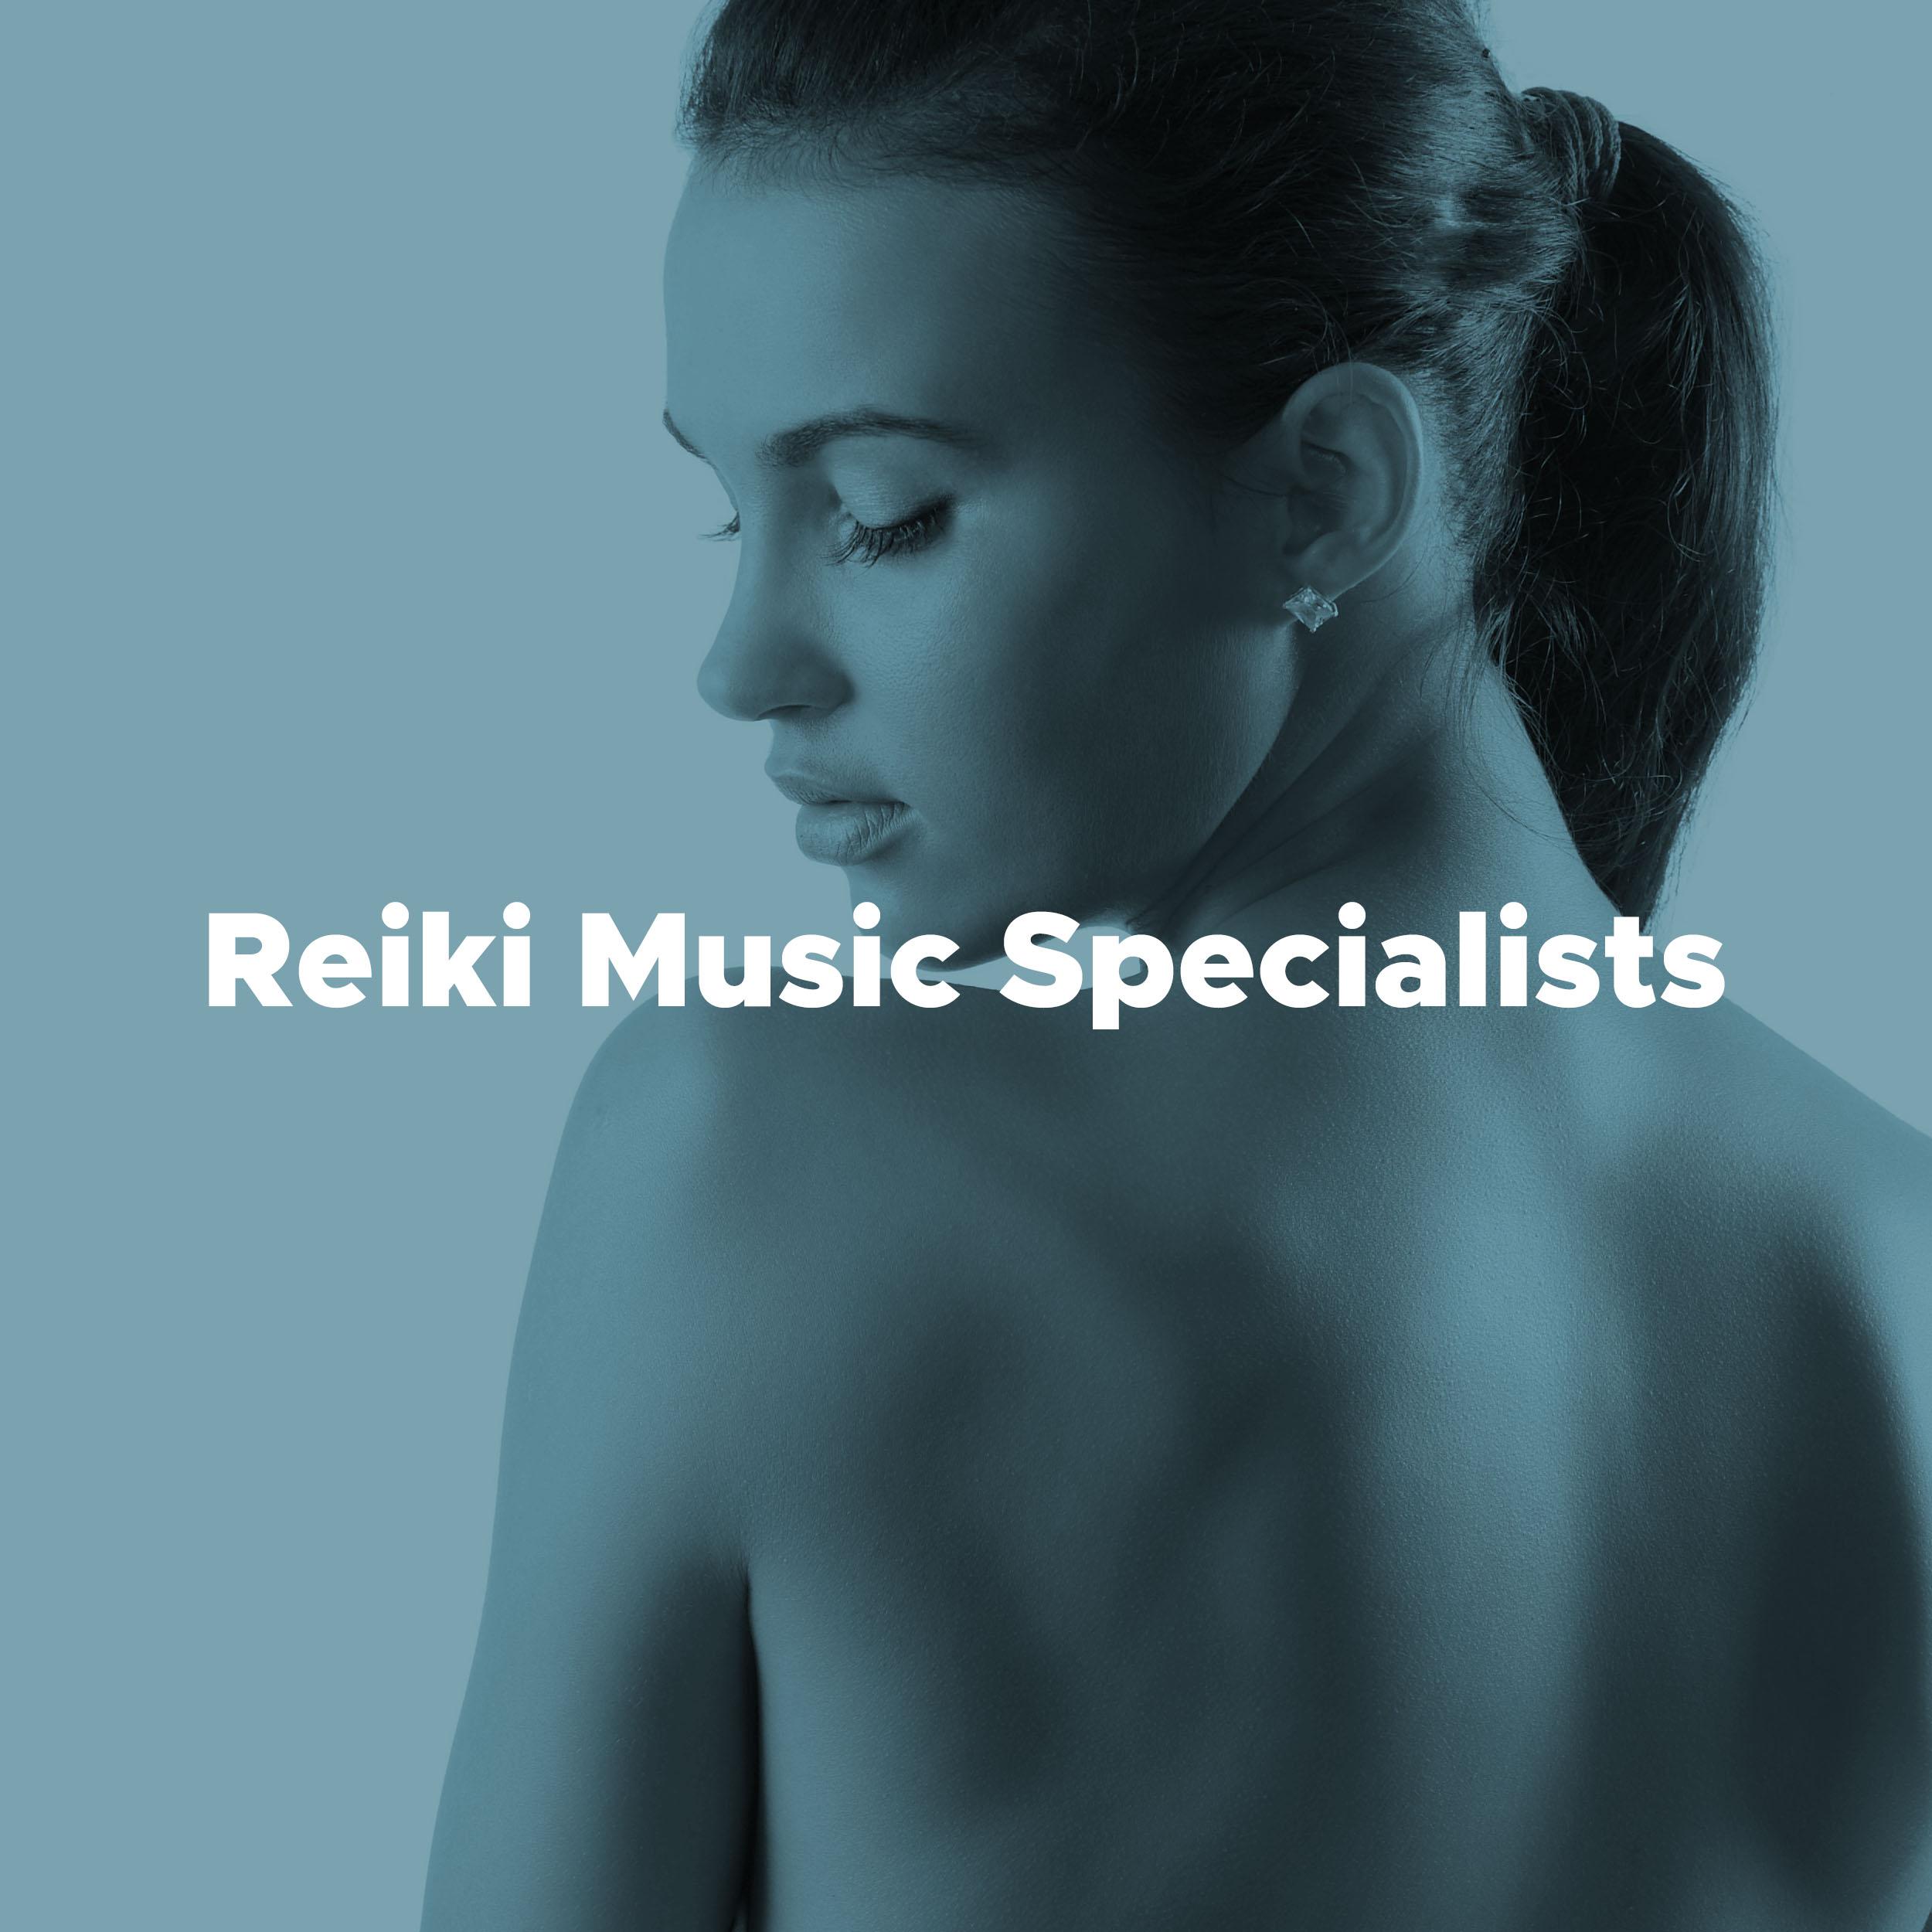 Reiki Music Specialists